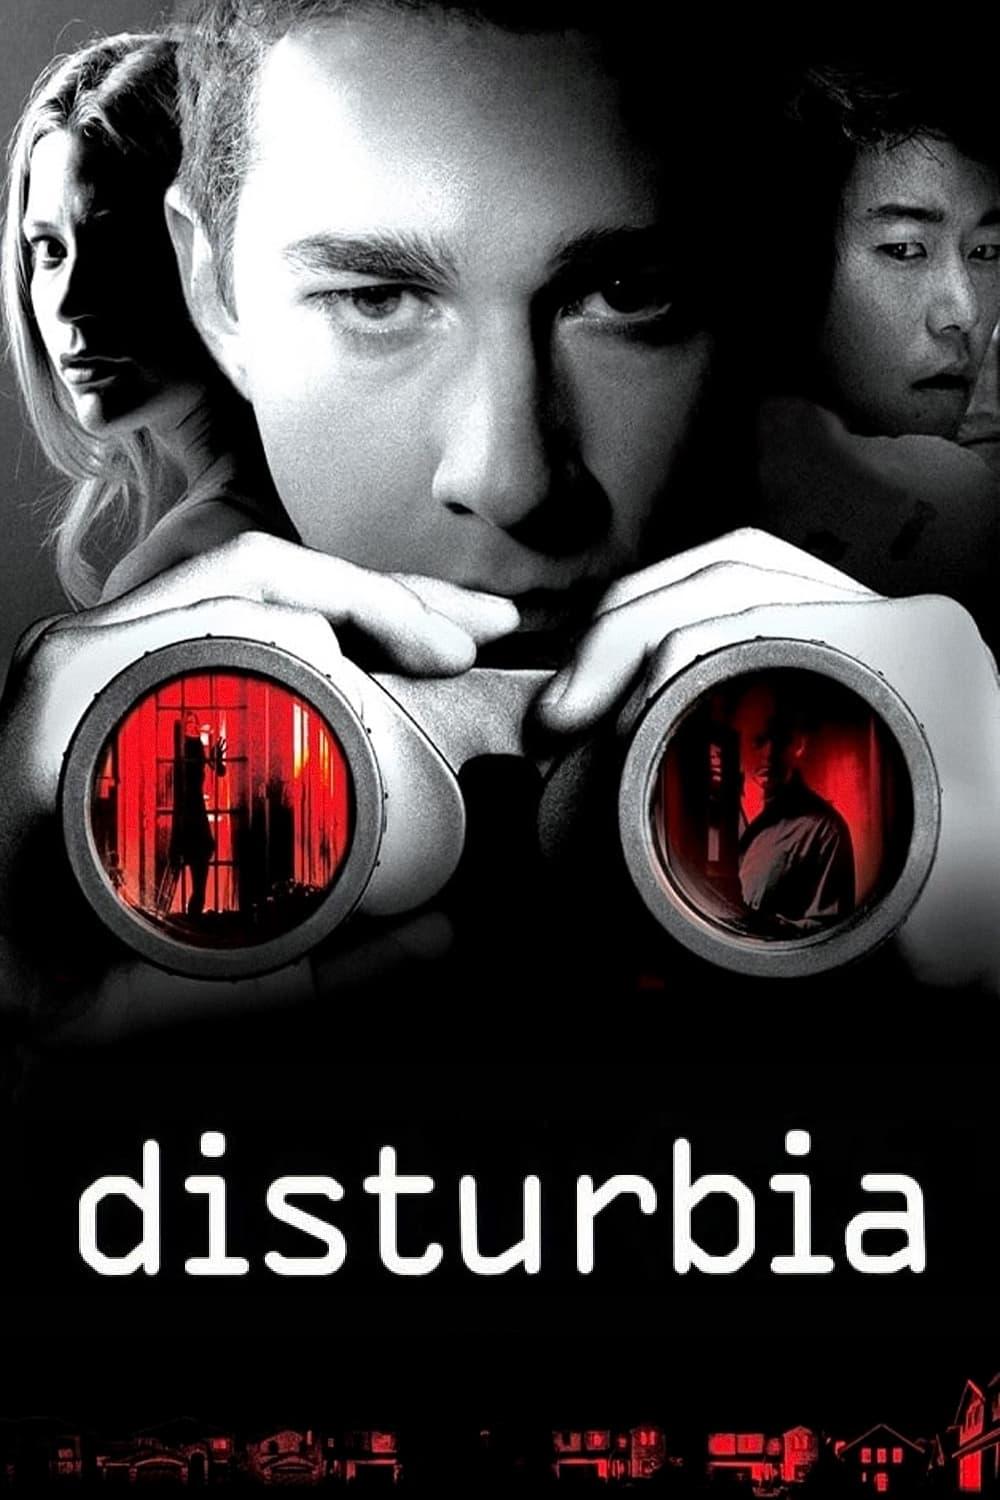 Disturbia poster